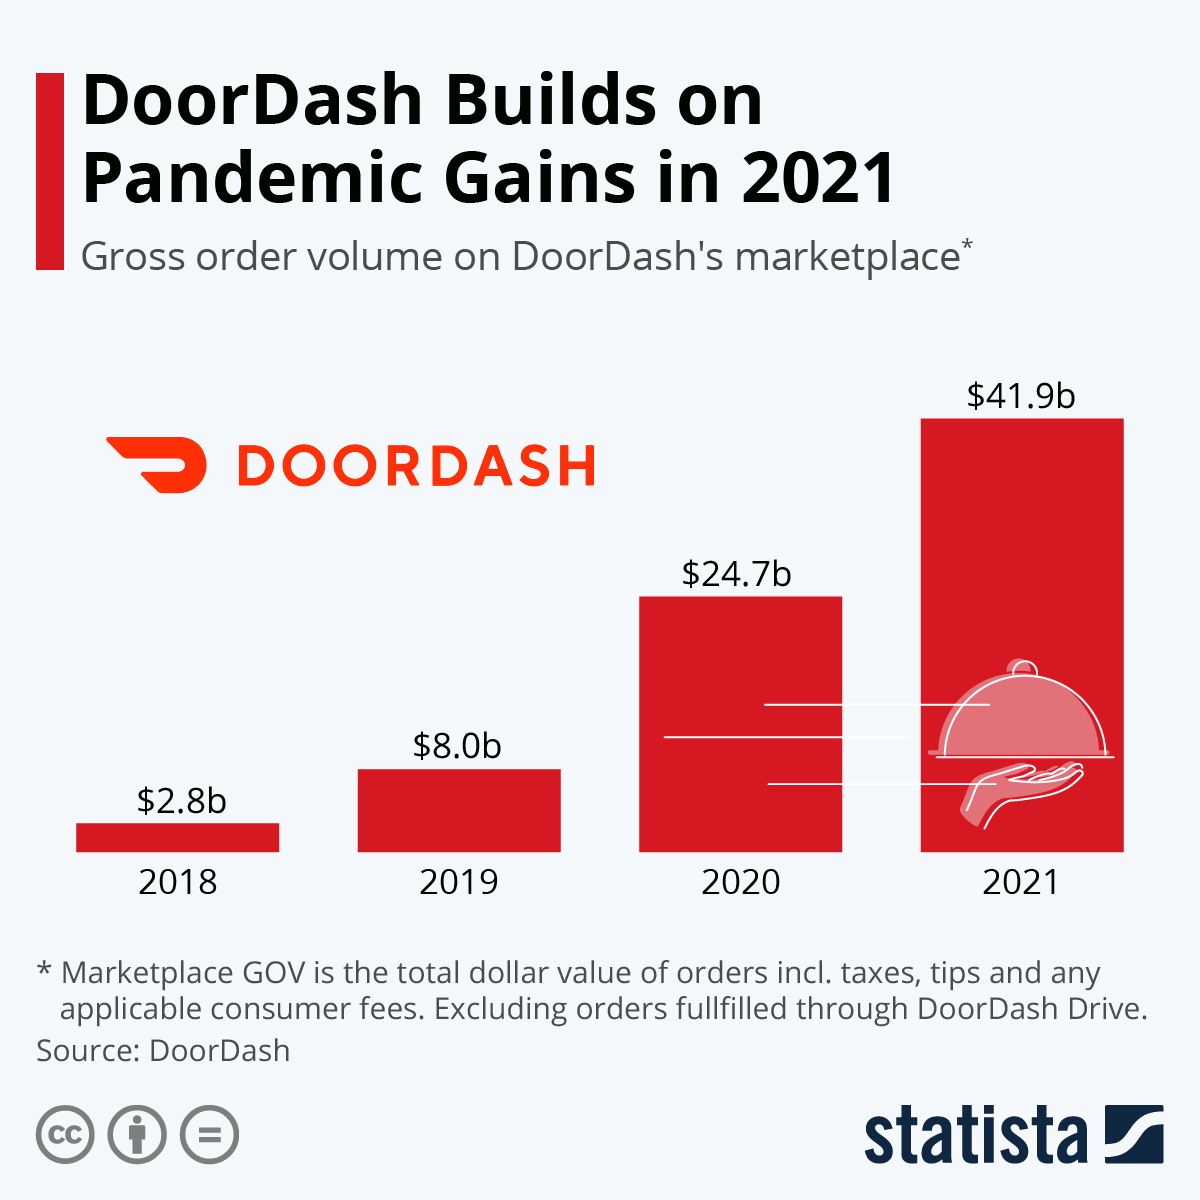 DoorDash Builds on Pandemic Gains in 2021